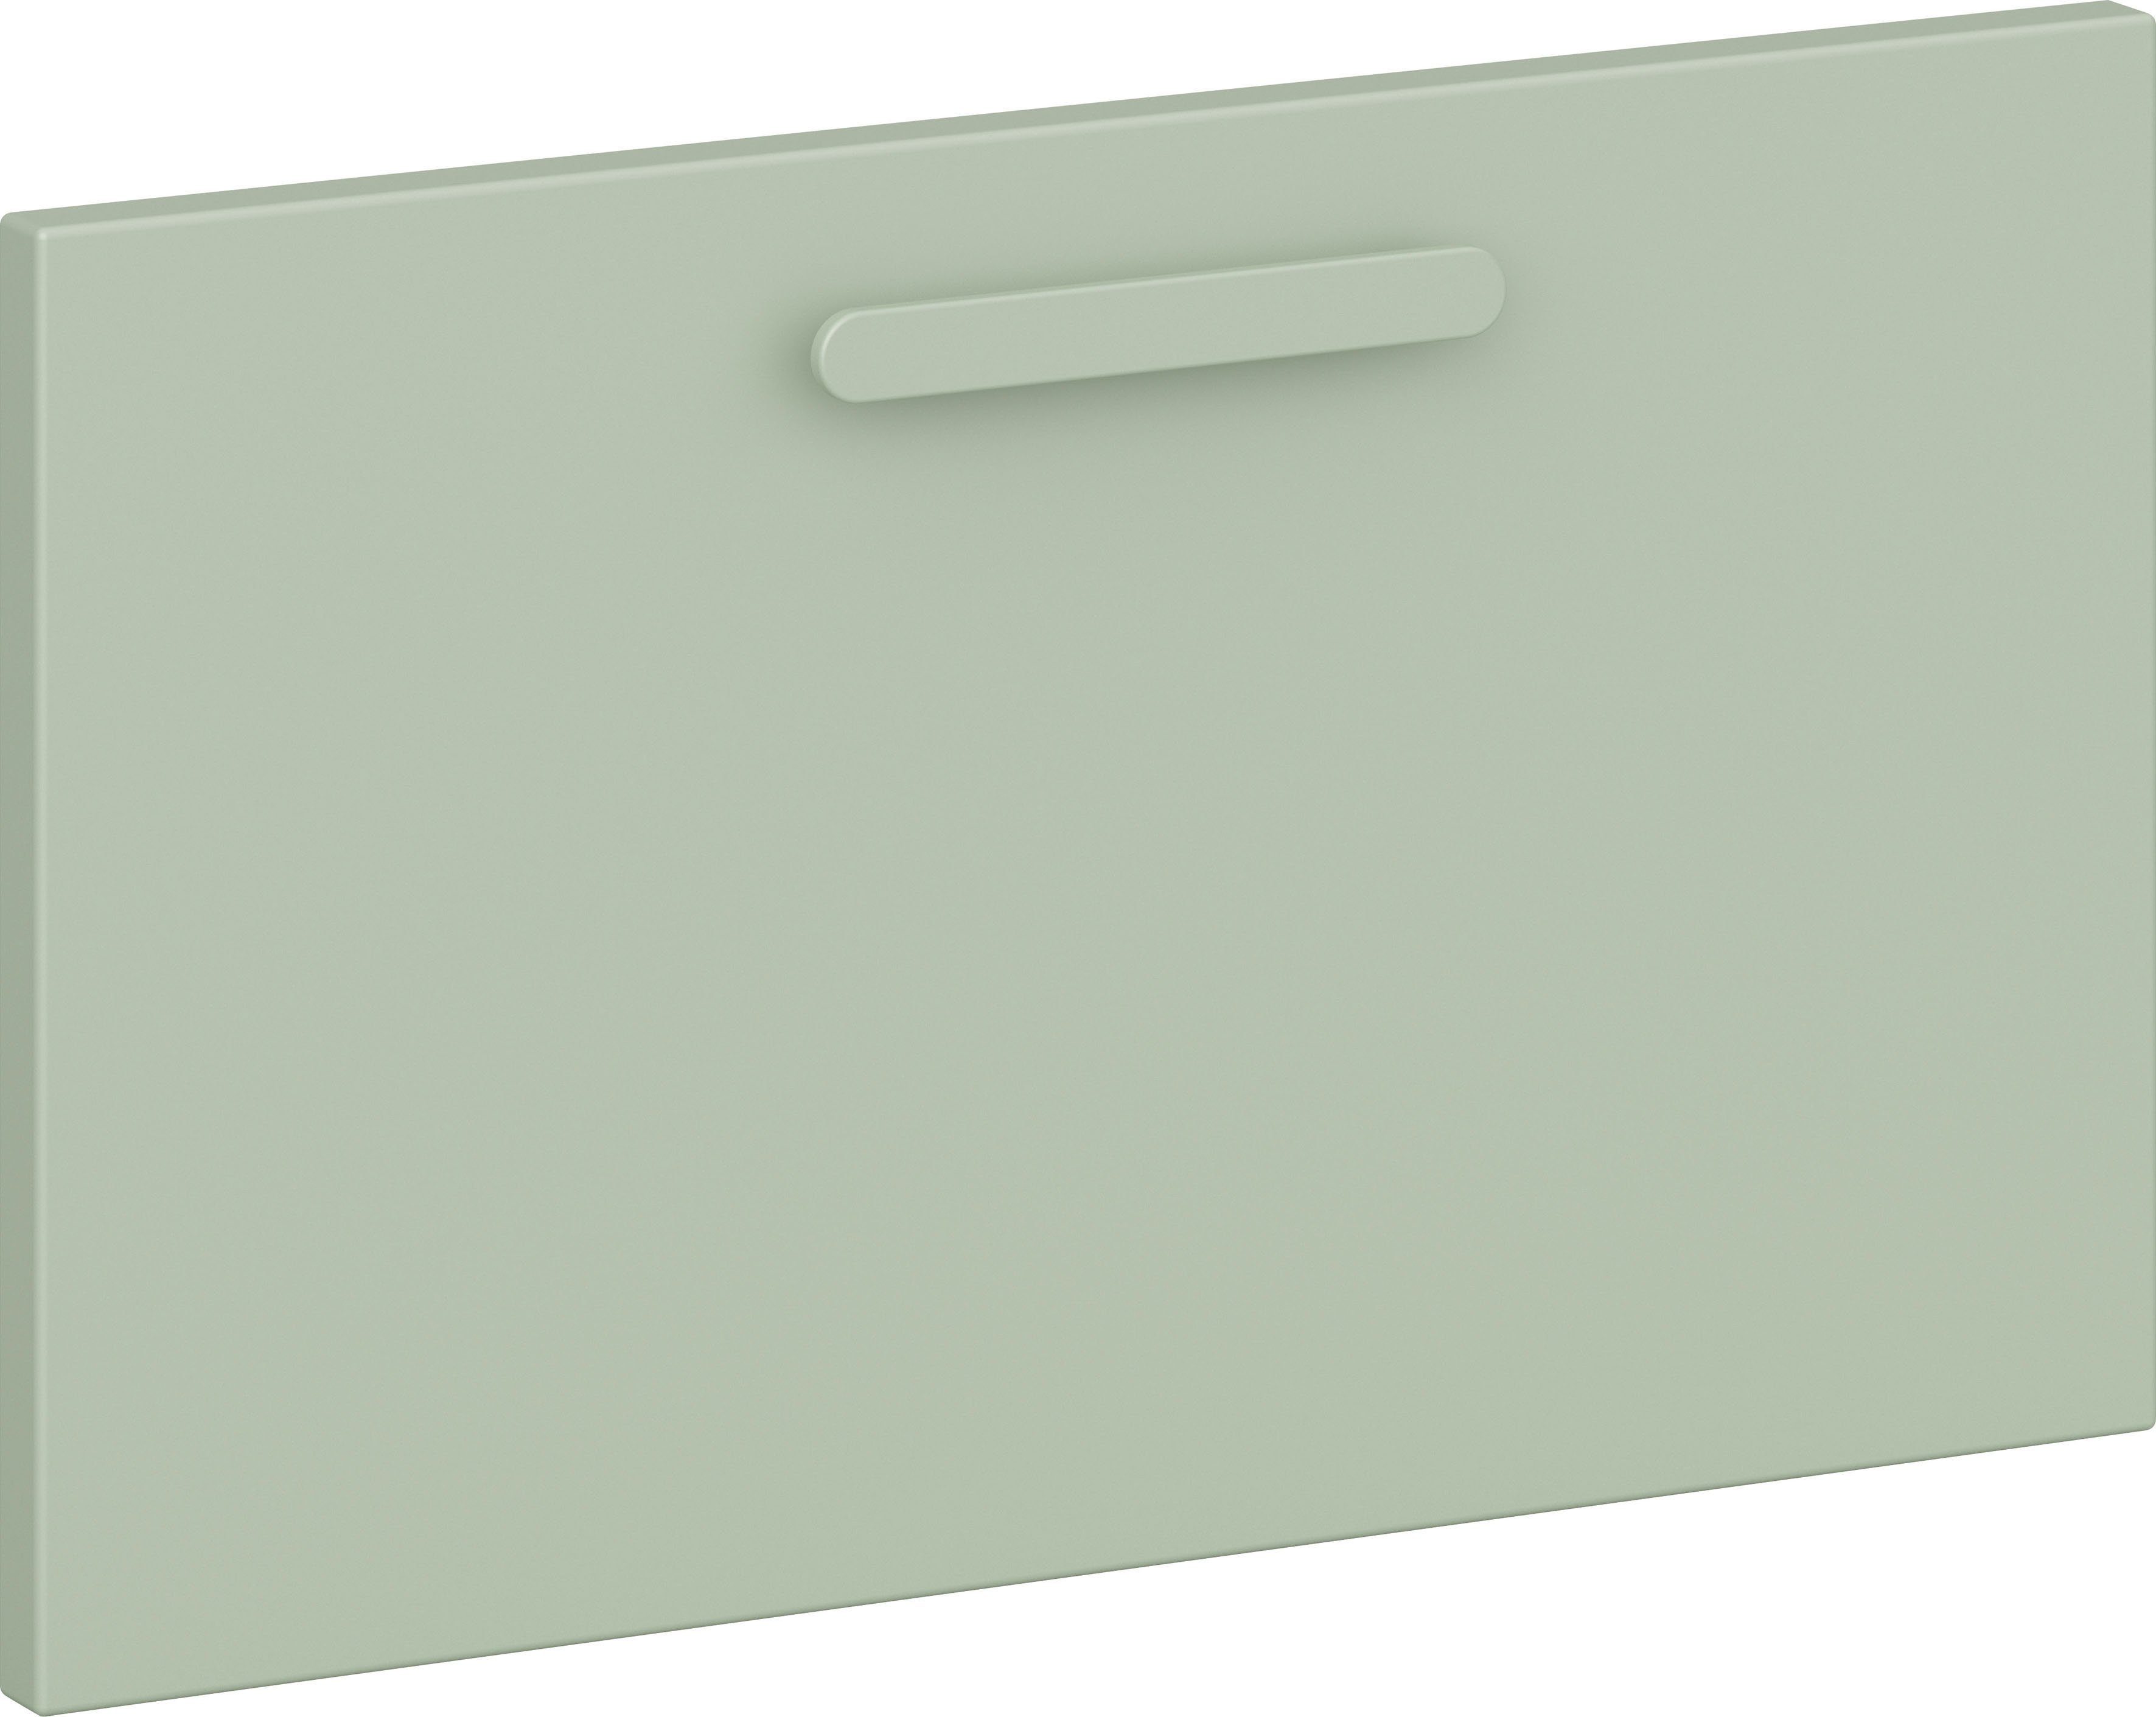 Hammel Furniture Schranktür St), die rechts 005, Module 030 Keep 003, Ergänzung by für Hellgrün Modul Türanschlag als Hammel und 004 (1